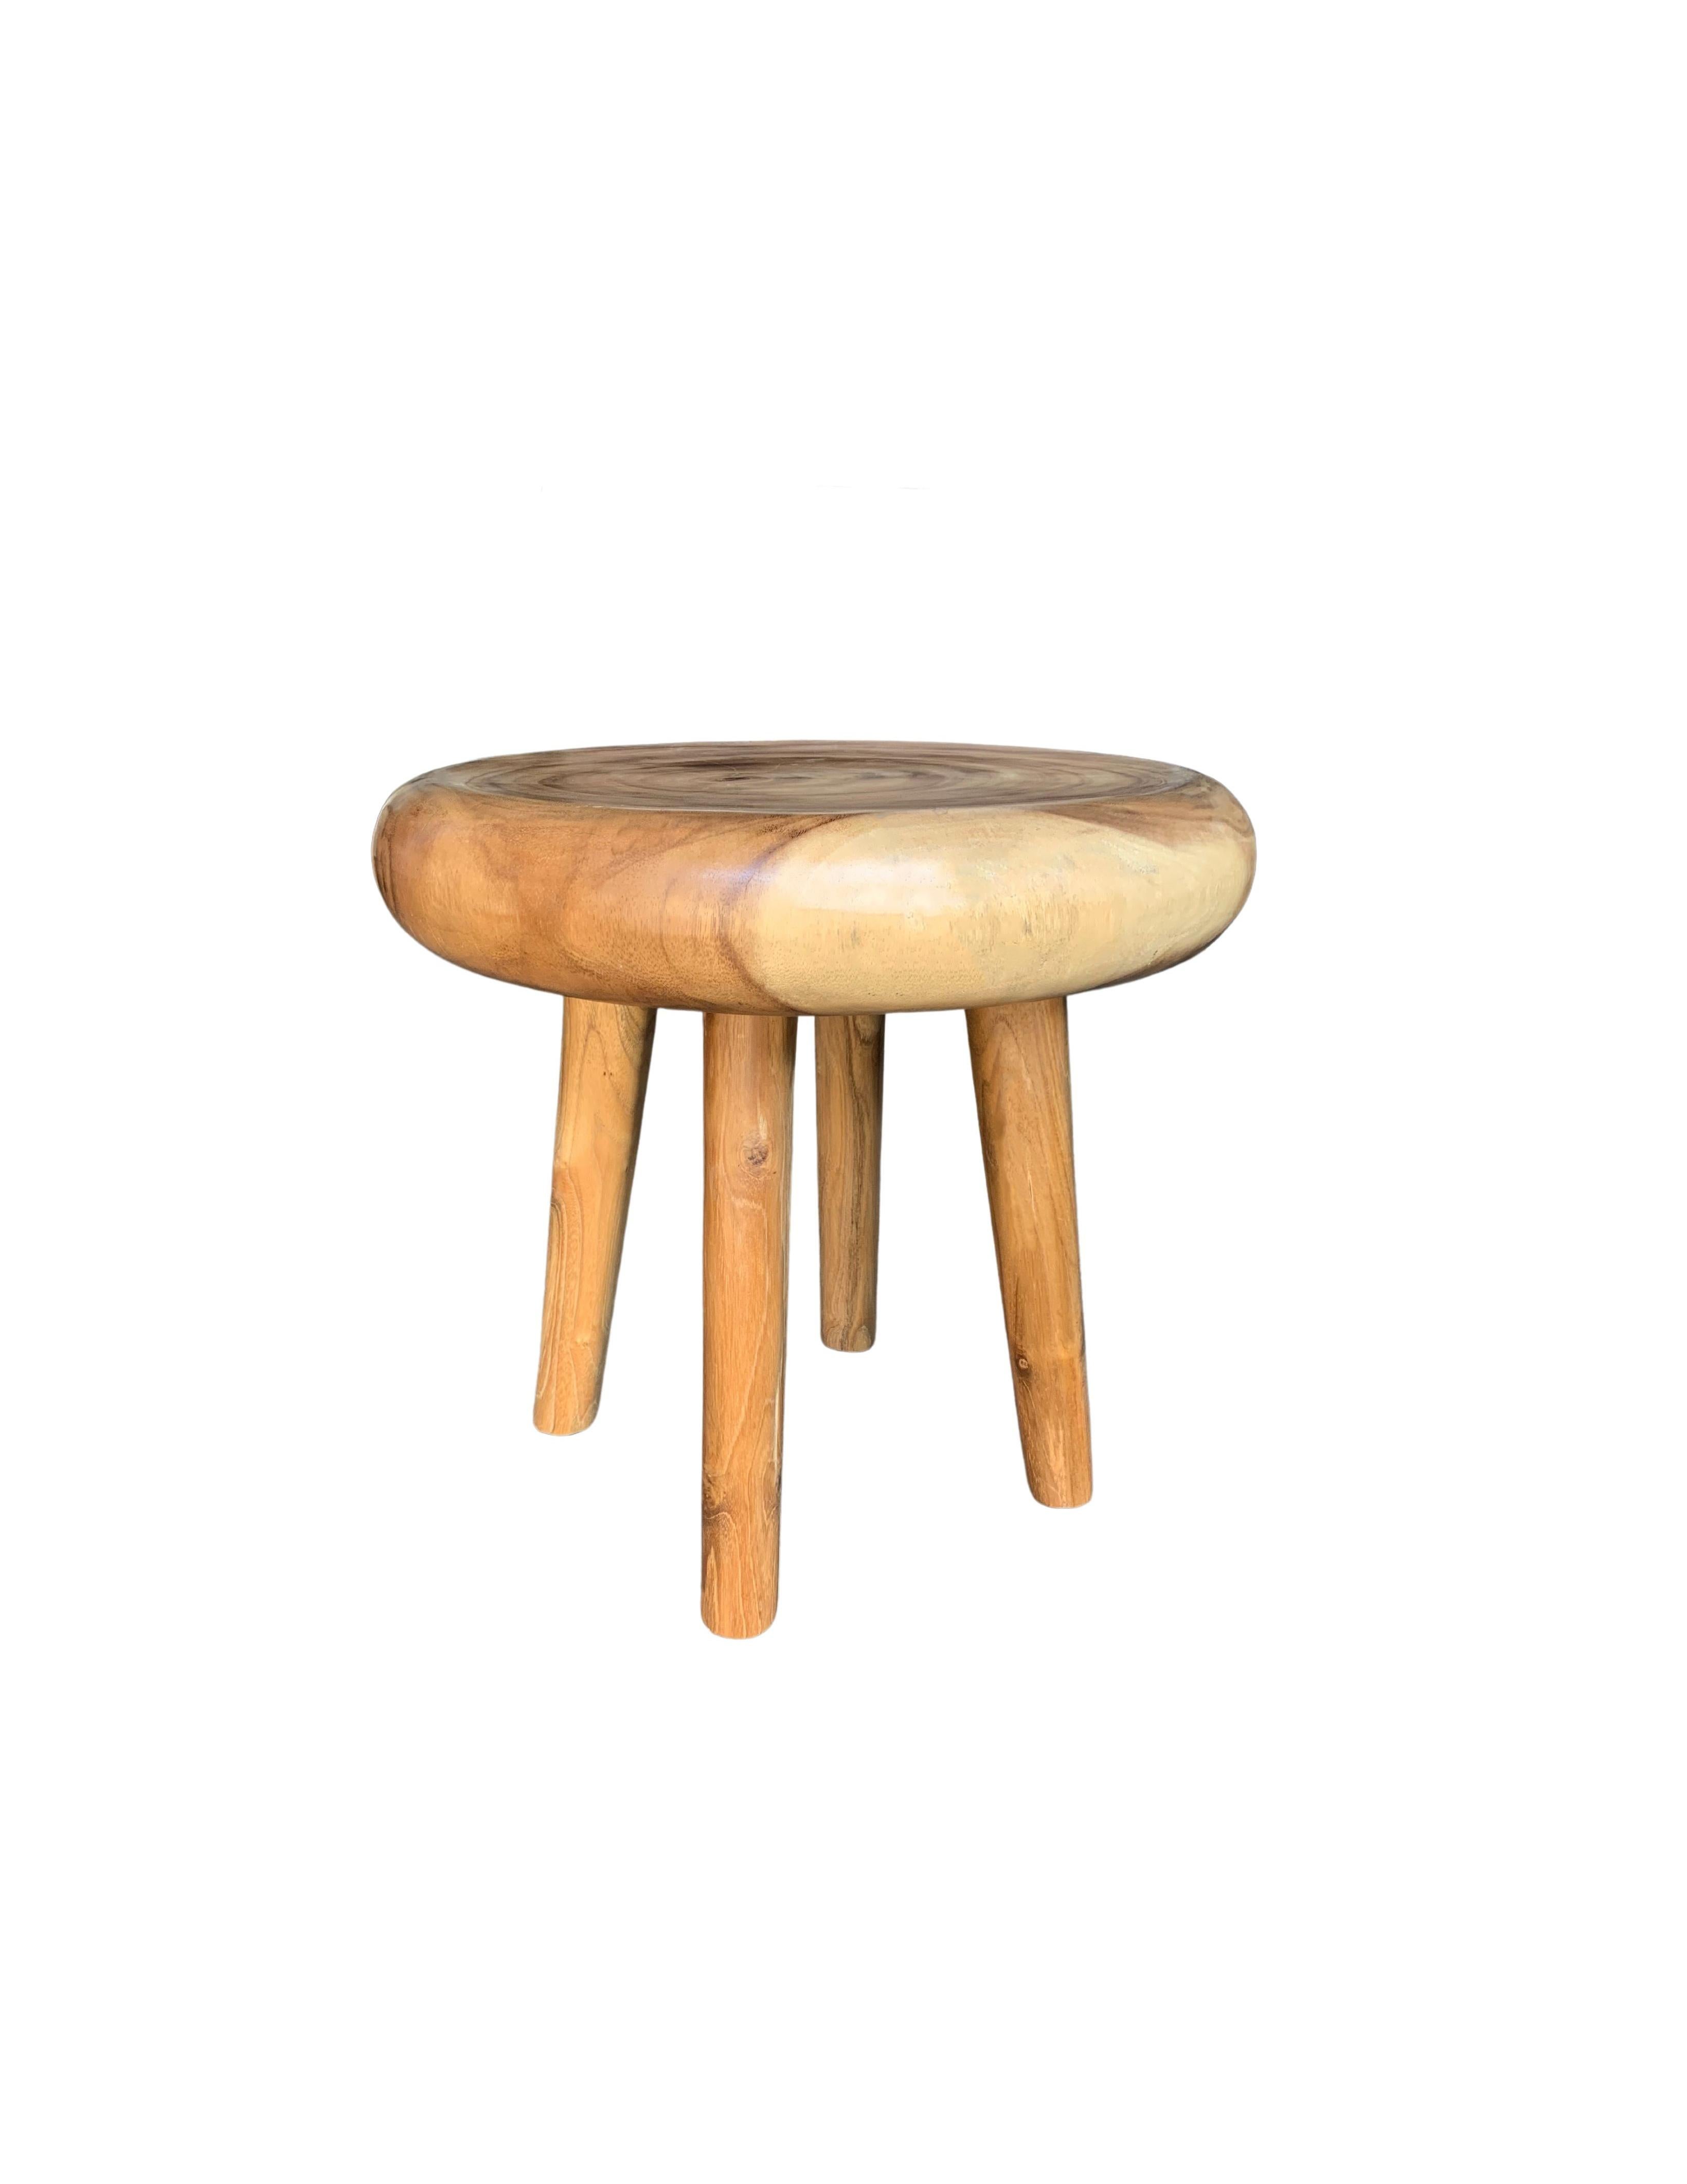 Une table d'appoint ronde merveilleusement sculpturale avec des pieds aux proportions étroites. Son pigment neutre et sa texture boisée subtile s'intègrent parfaitement à tous les espaces. Une pièce sculpturale unique et polyvalente qui ne manquera